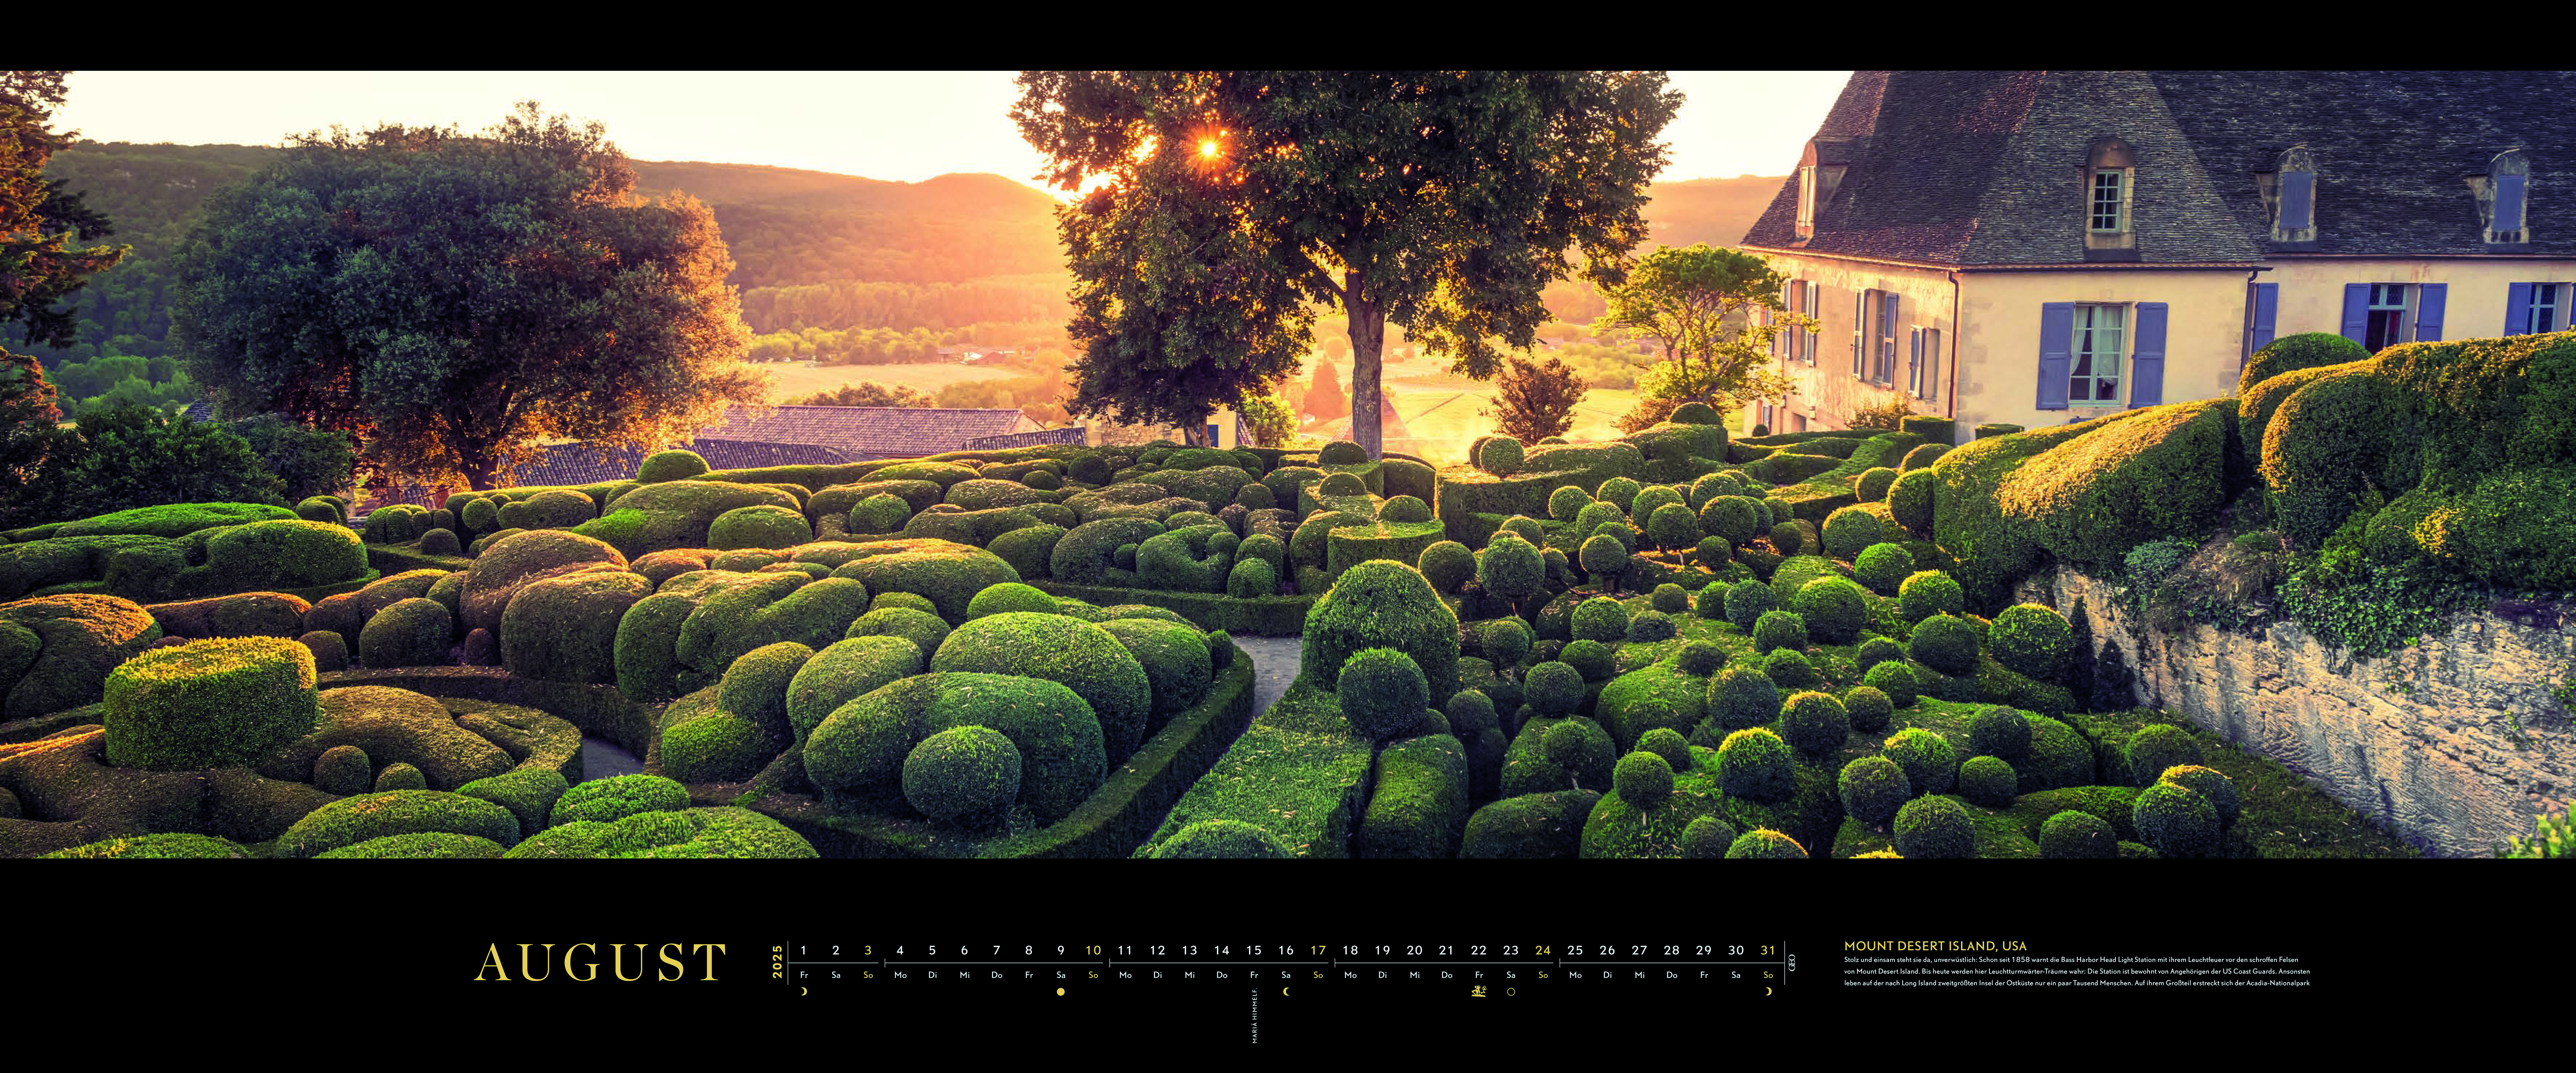 Panorama-Kalender-Abo "Die schönsten Gärten" 2025